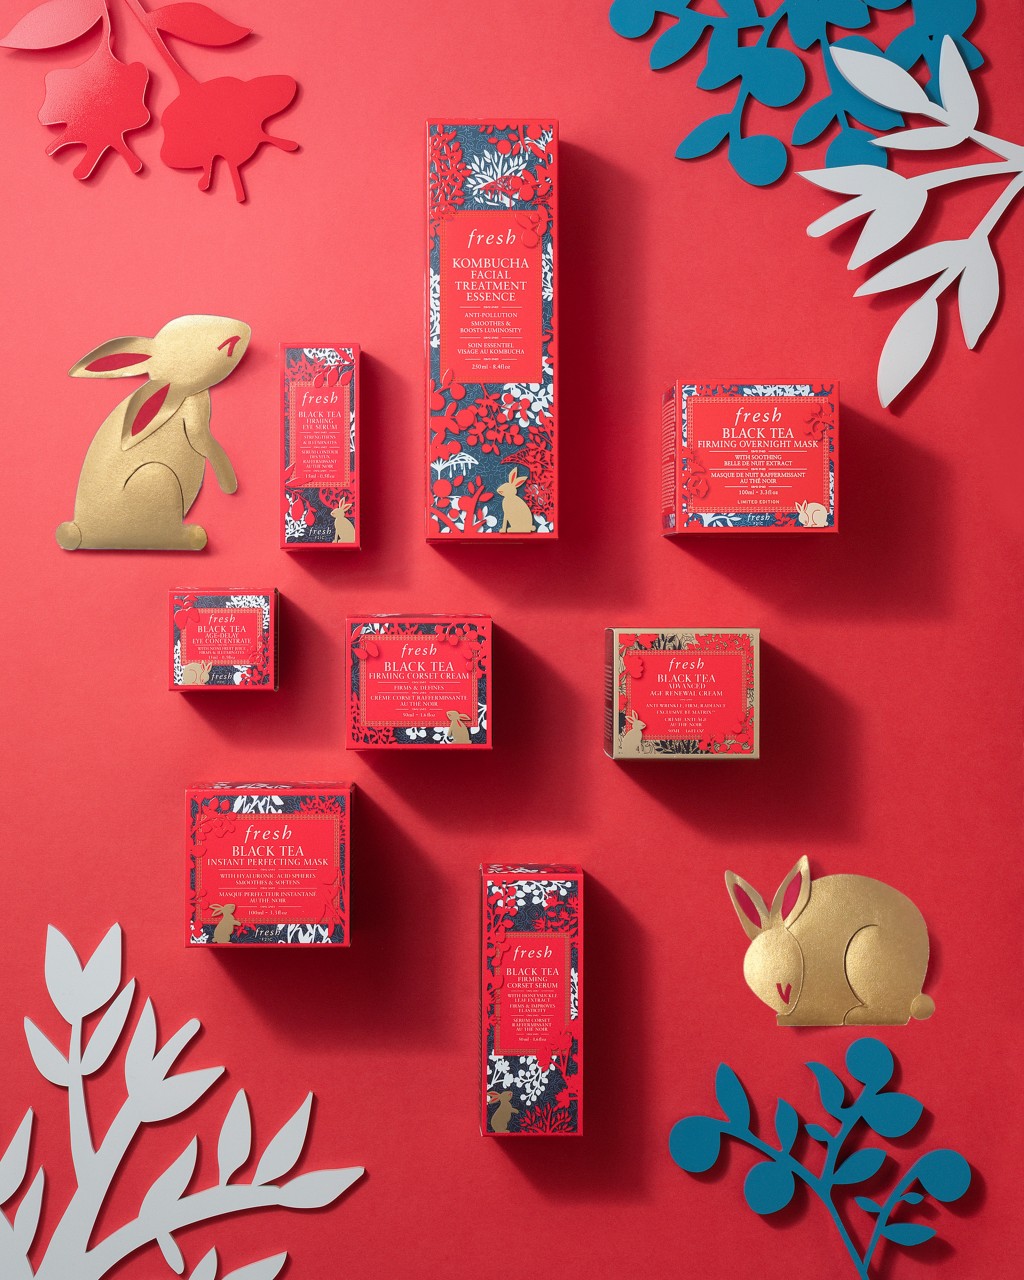 除了兔年新春限量版，紅茶抗皺緊緻系列亦換上新春包裝， 充滿節日氣氛。